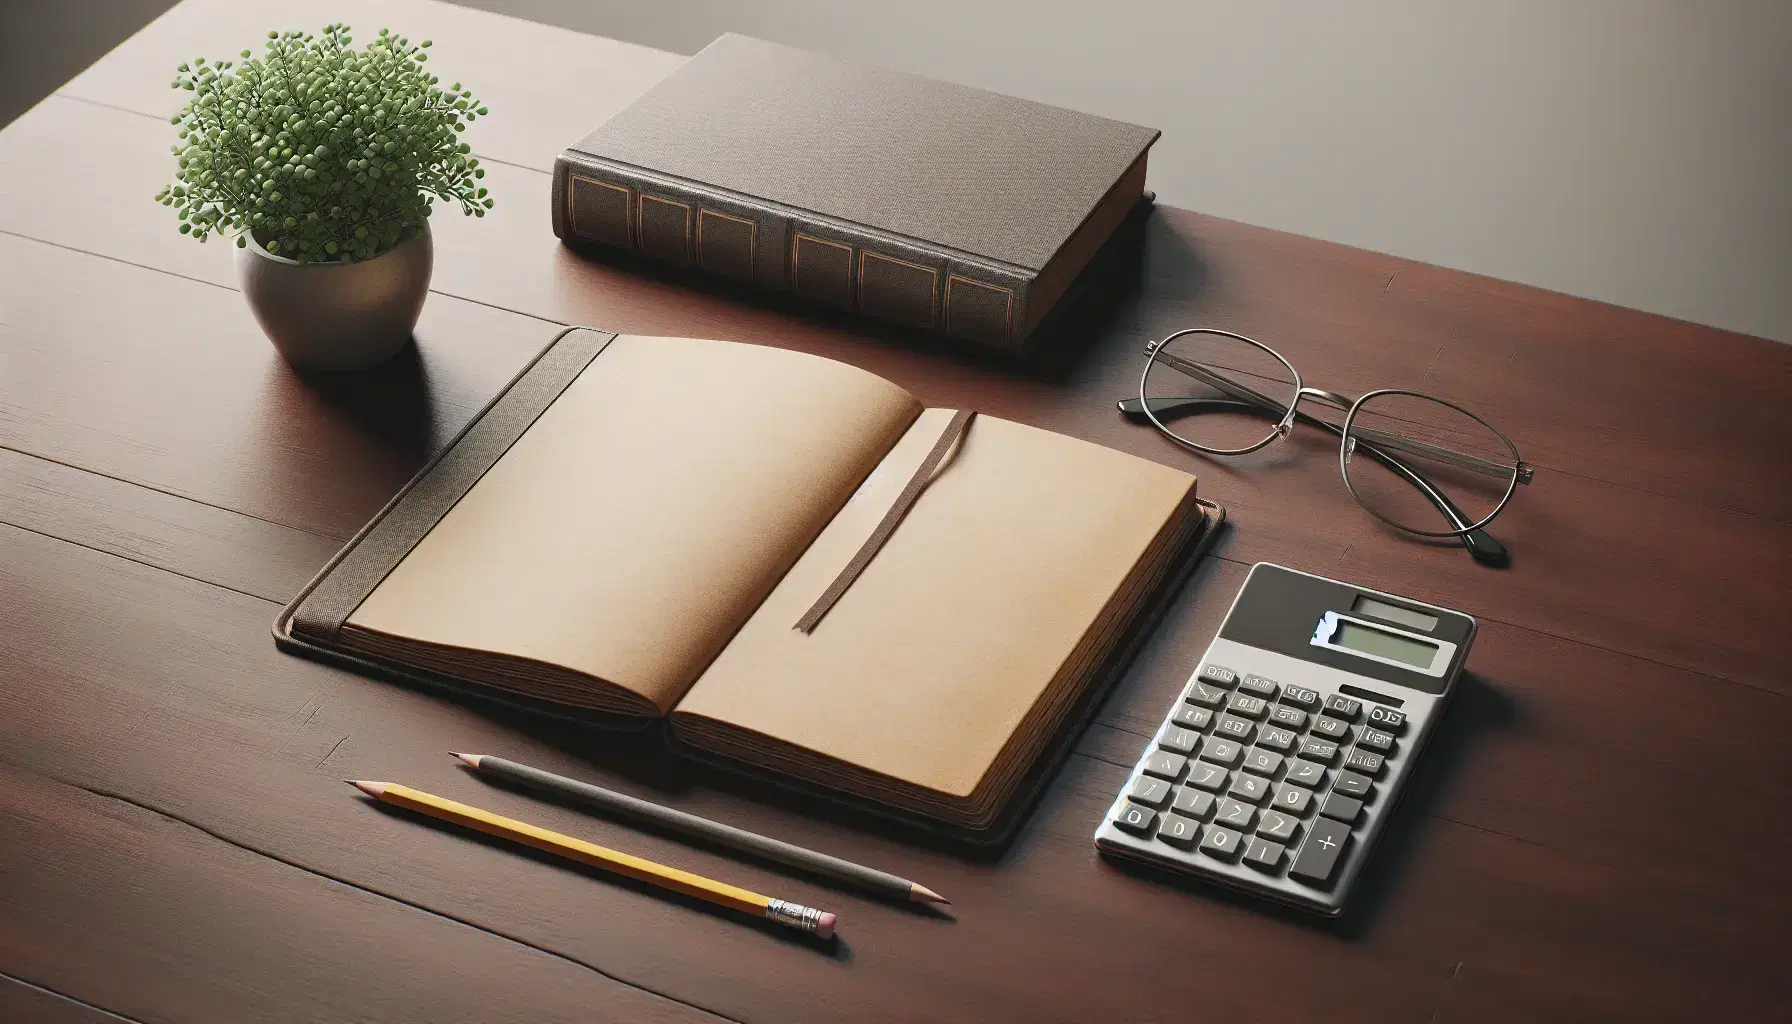 Escritorio de madera oscura con libro abierto, calculadora apagada, gafas metálicas y lápiz amarillo junto a planta en maceta blanca.